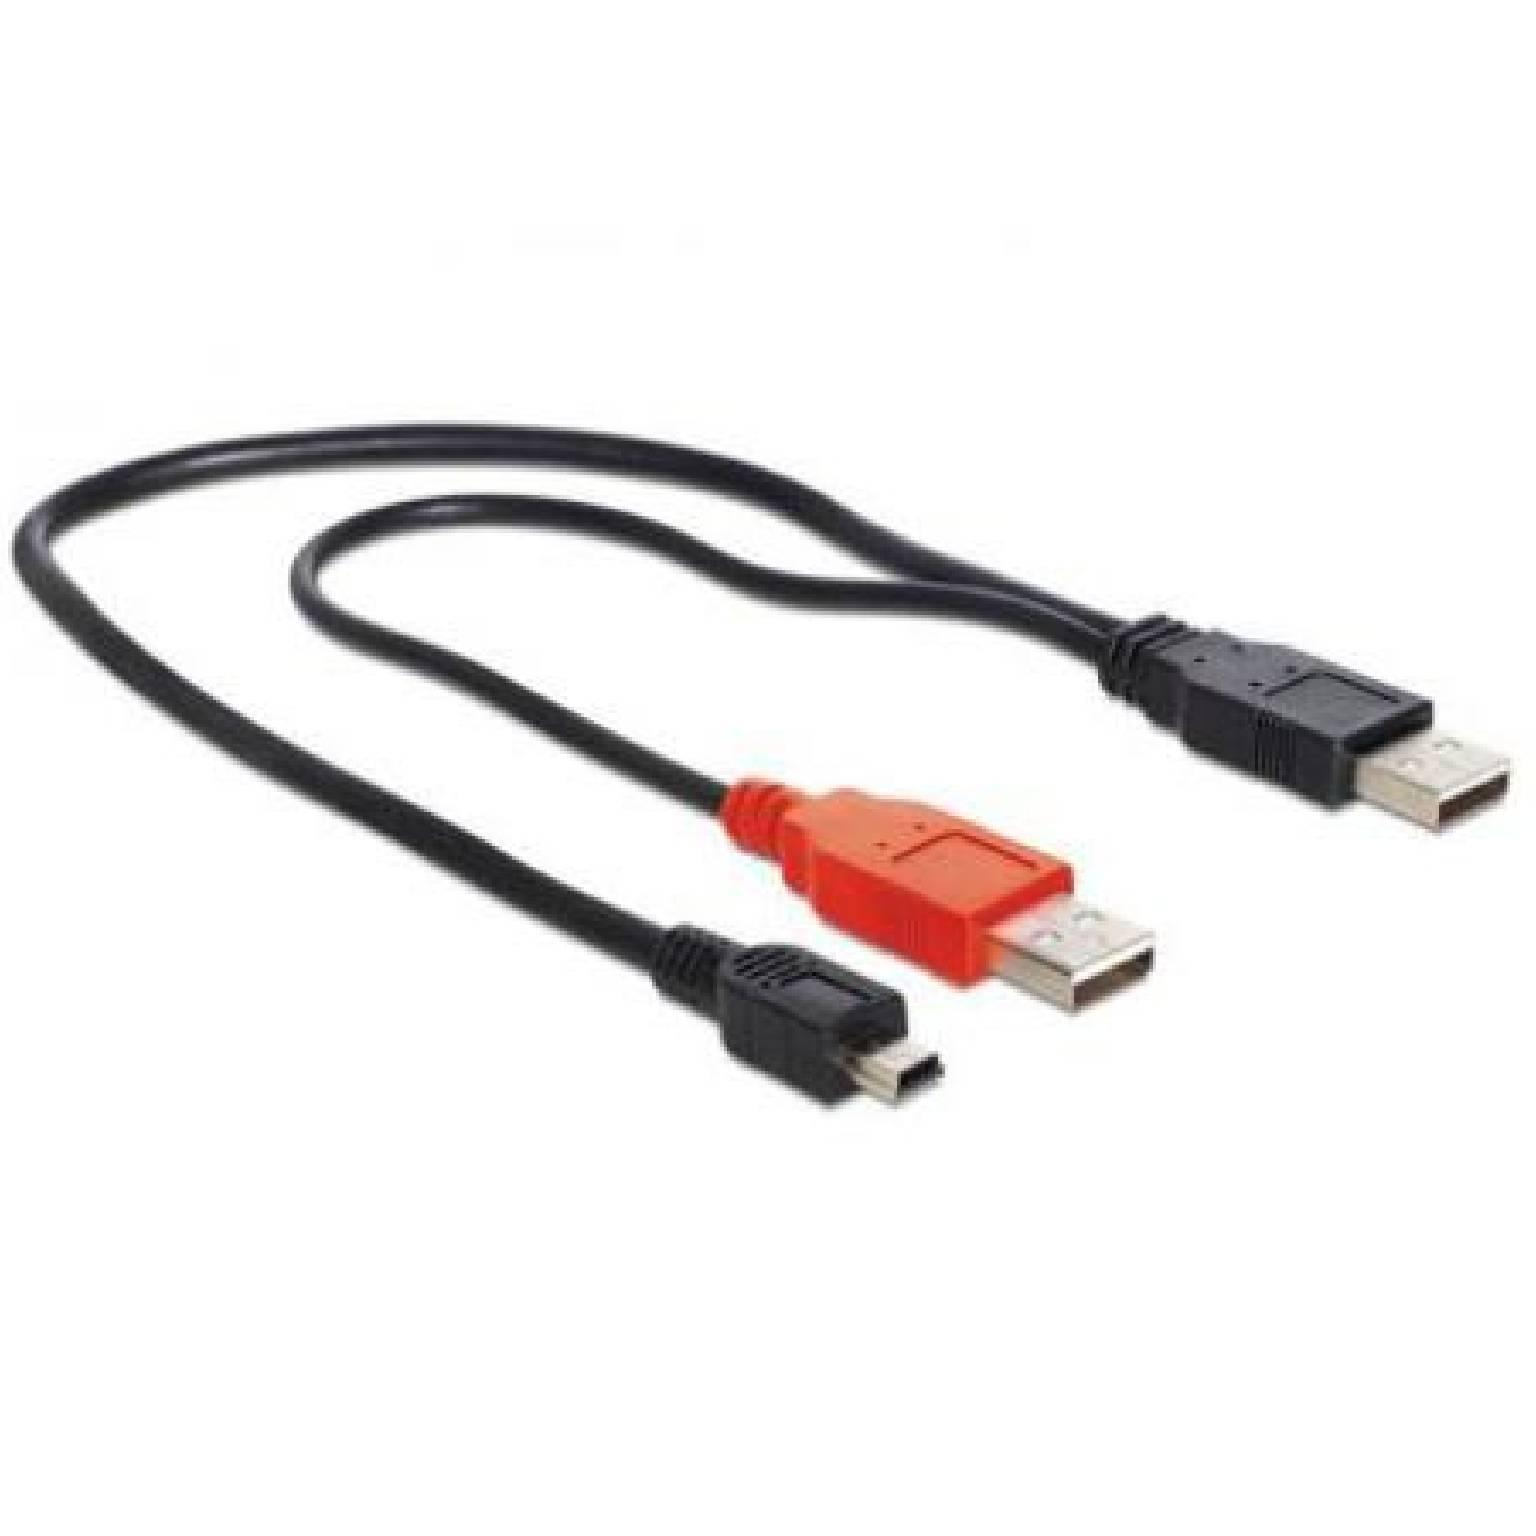 USB 2.0 Y kabel - Splitter